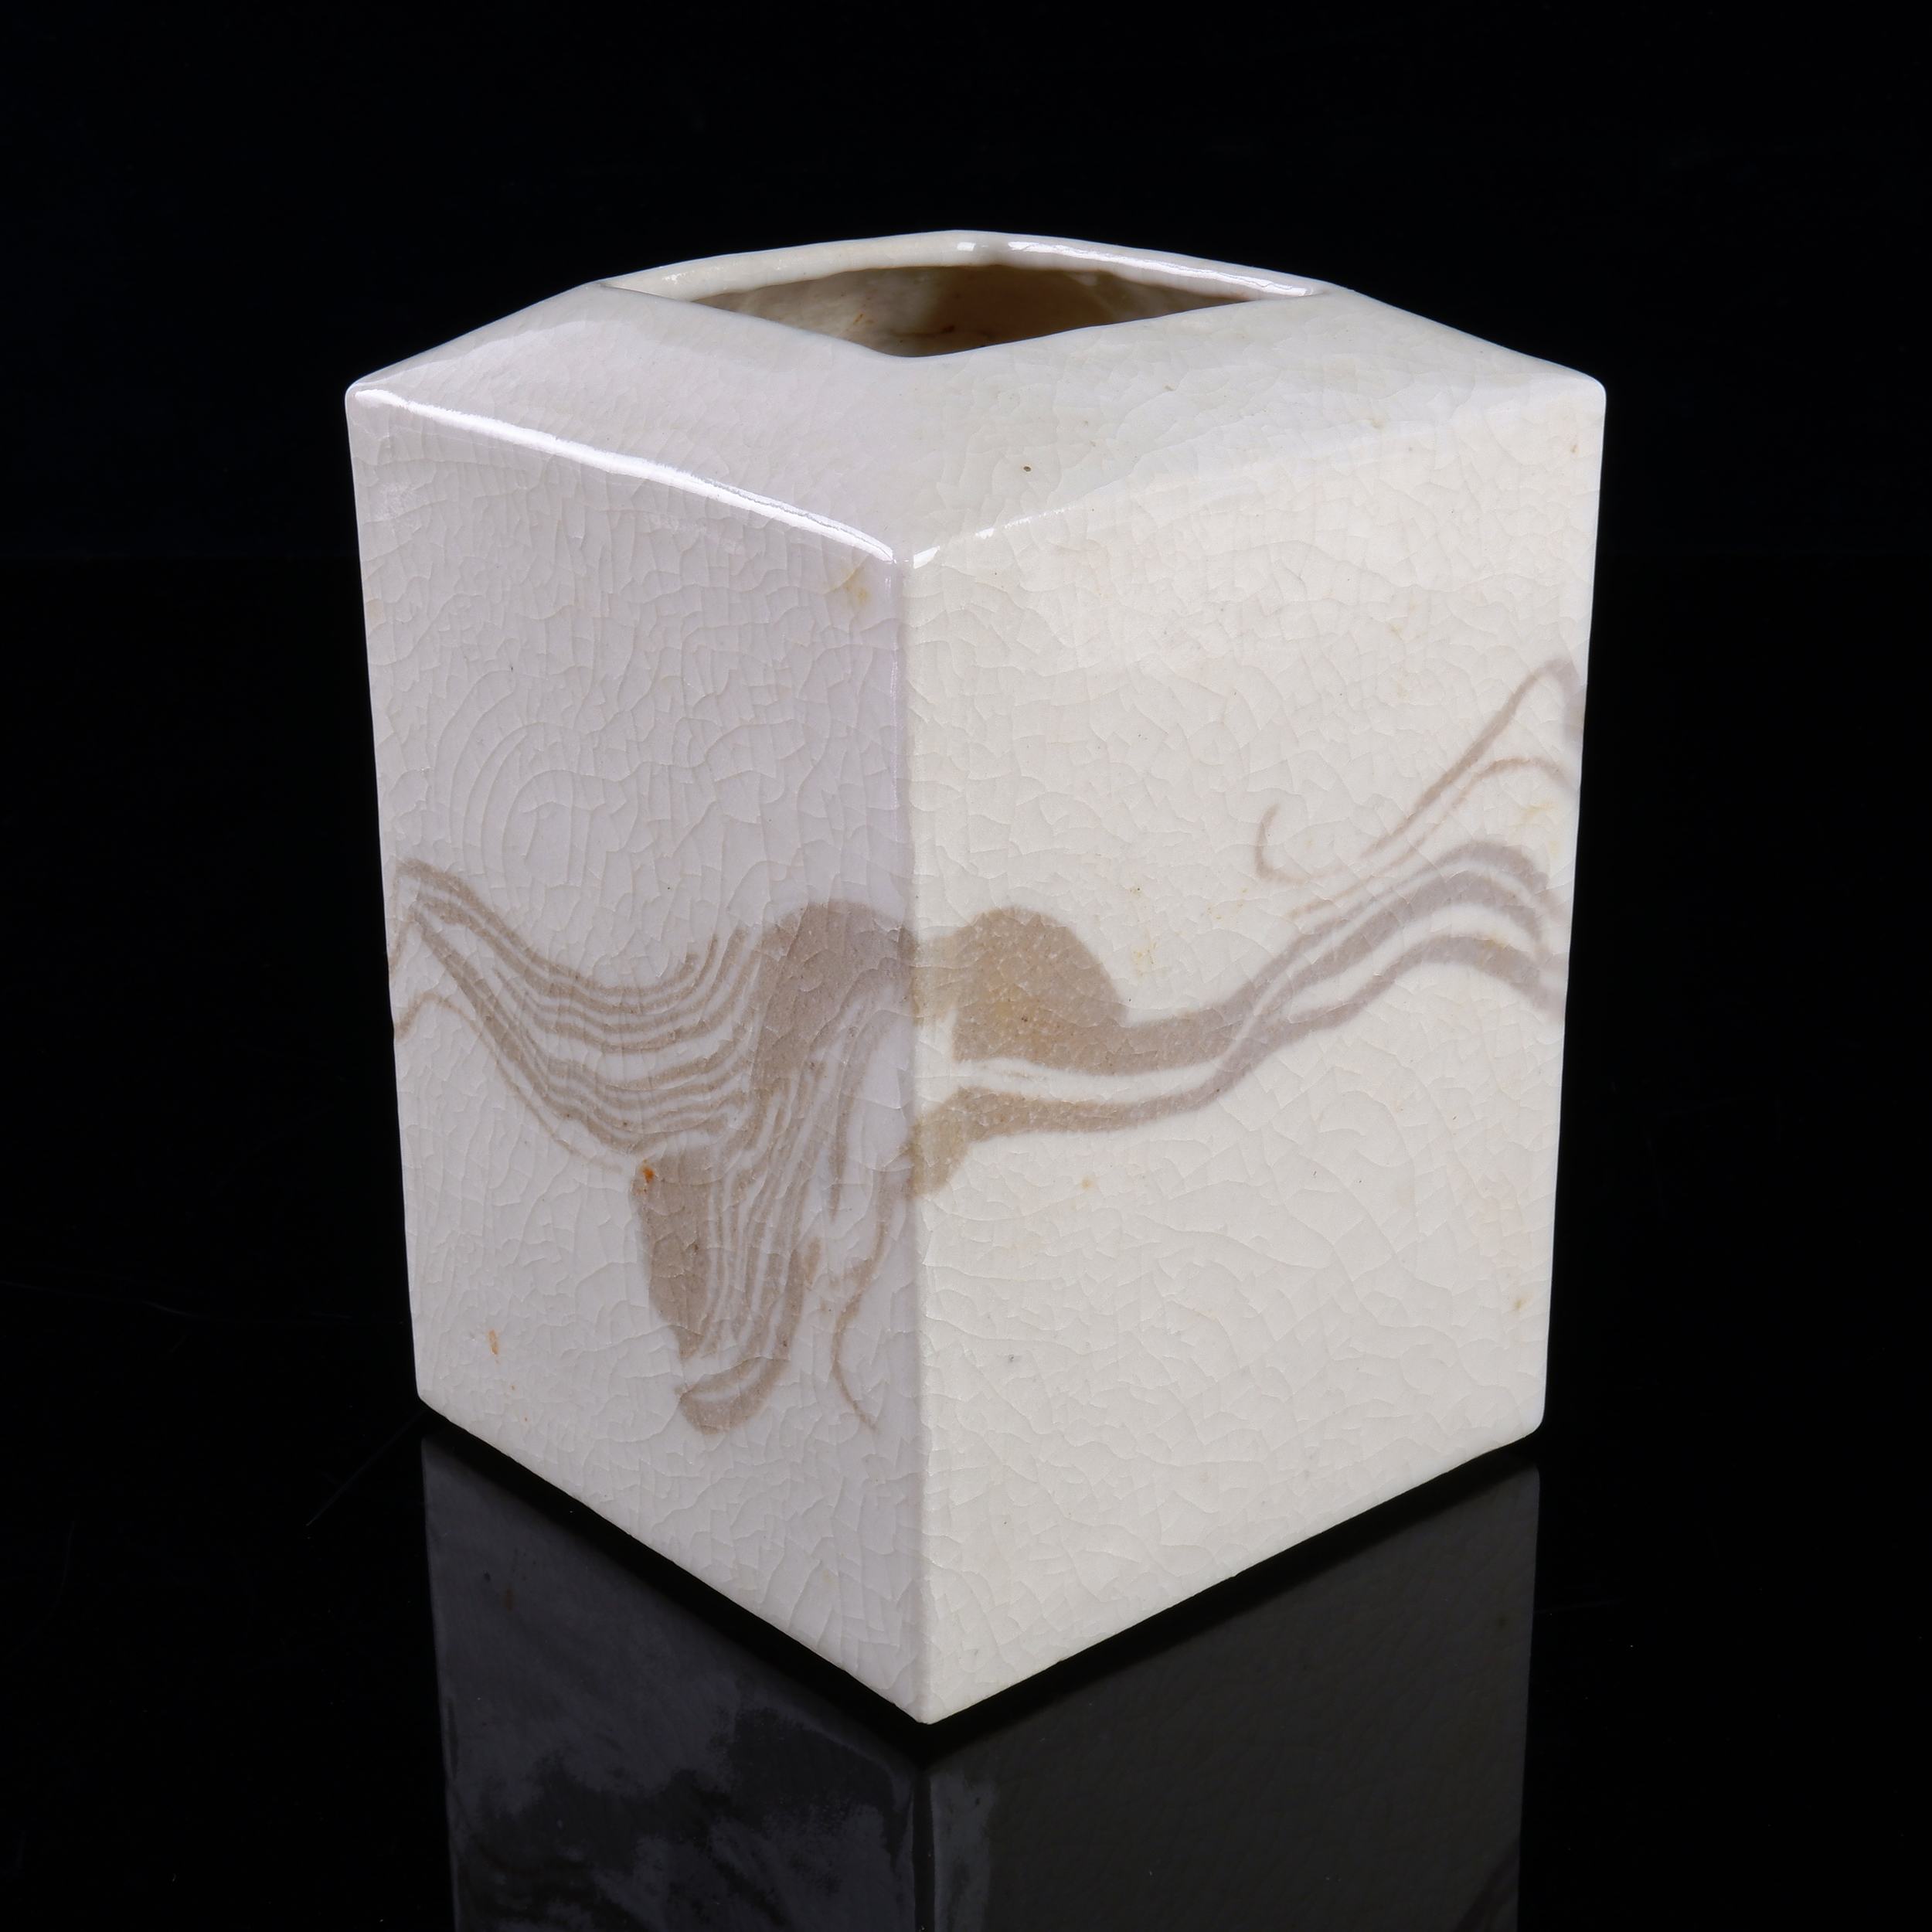 'Hiroe Swen (Japan, Australia 1934-) Glazed Stoneware Vase'